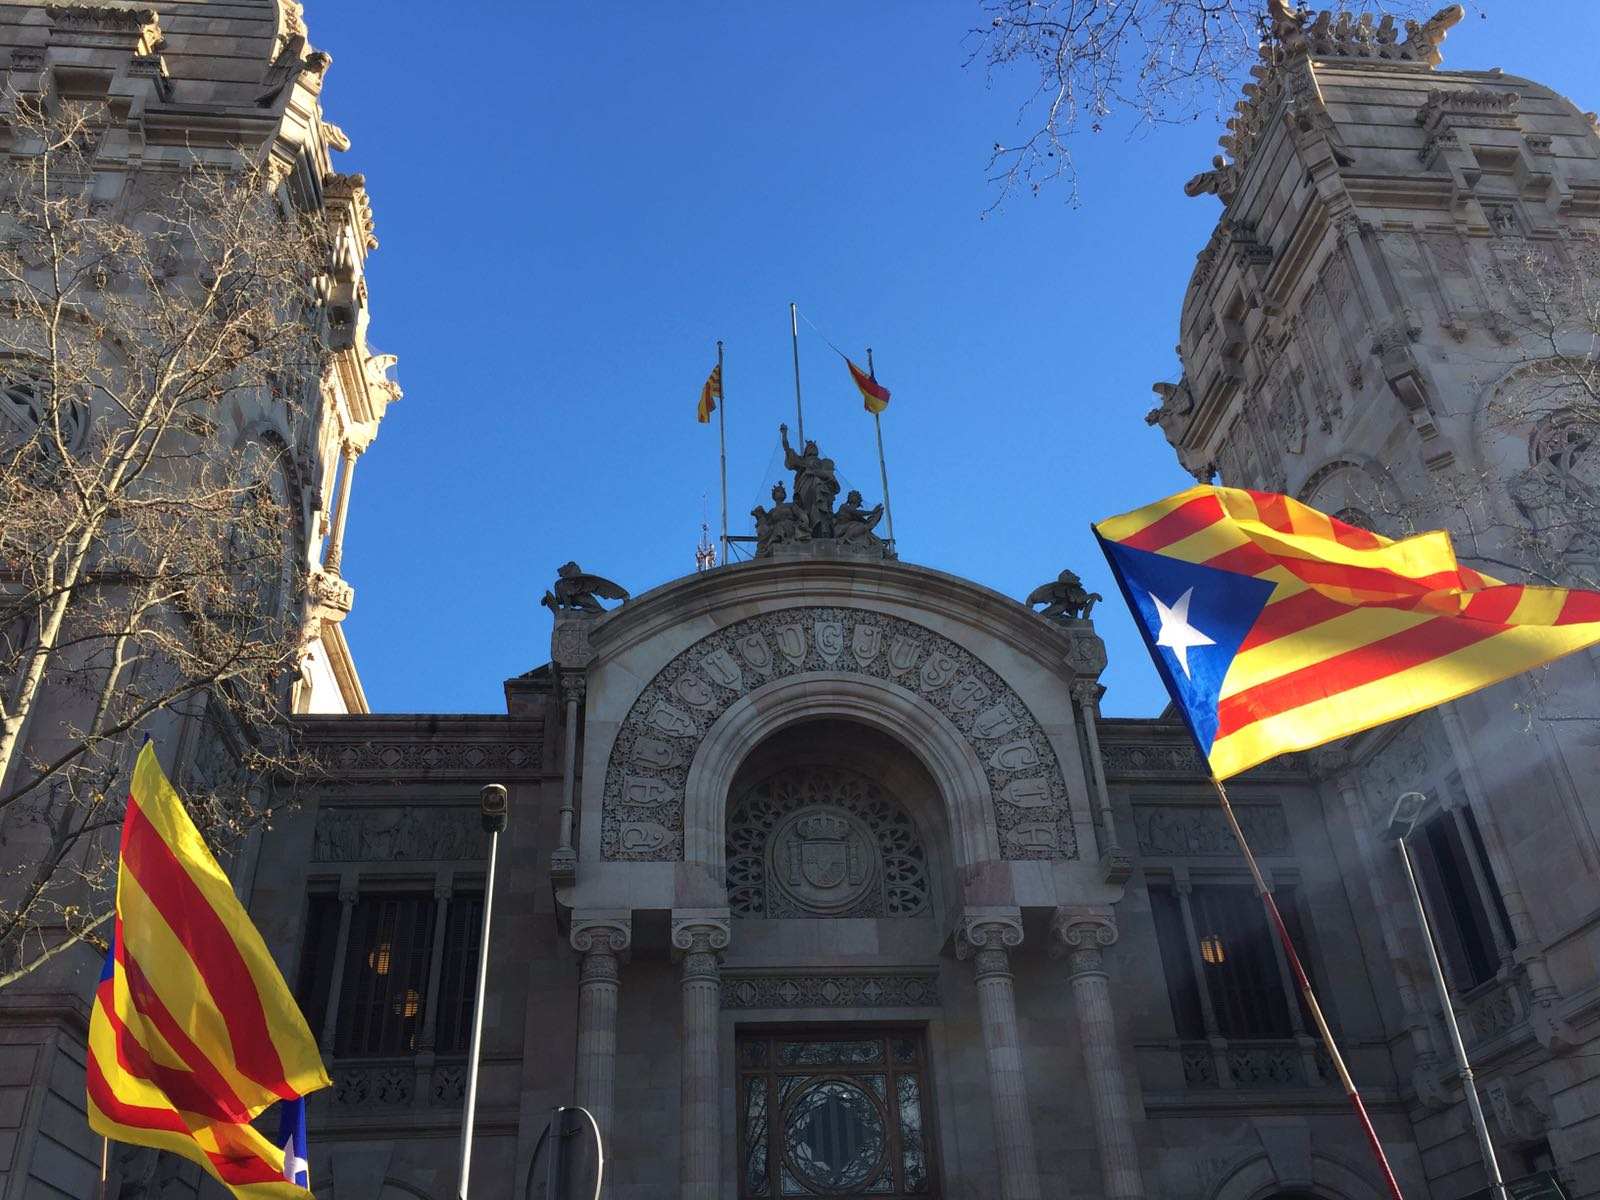 El català, a prop de la “mort clínica” en l’àmbit judicial